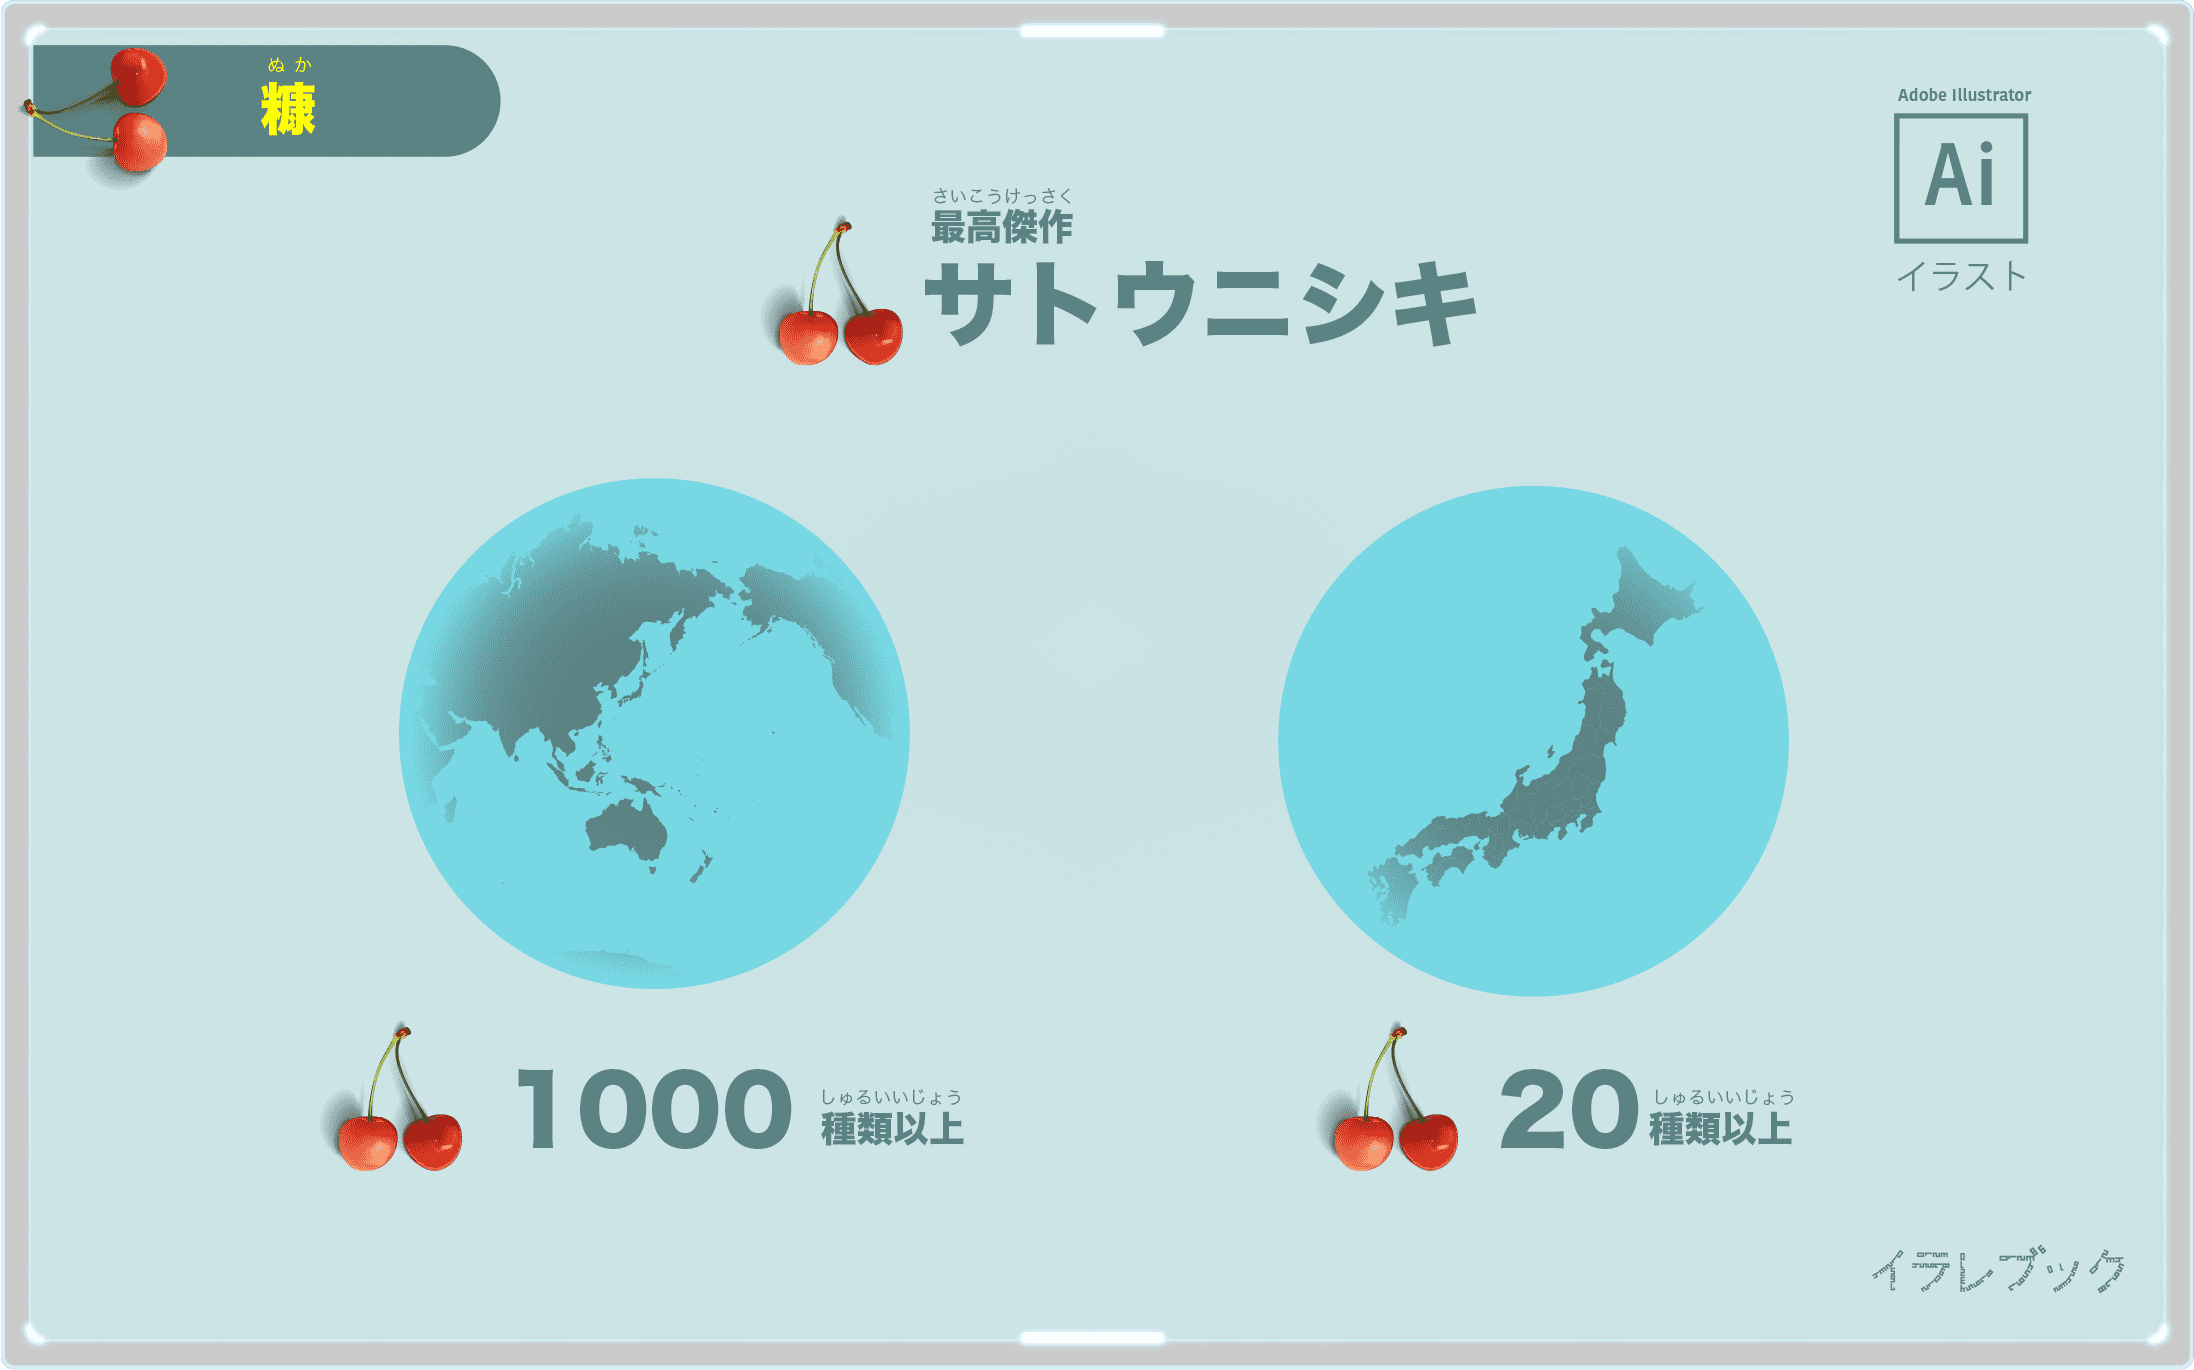 さくらんぼの品種は世界で1000種以上、日本で20以上ある。最高傑作はサトウニシキ